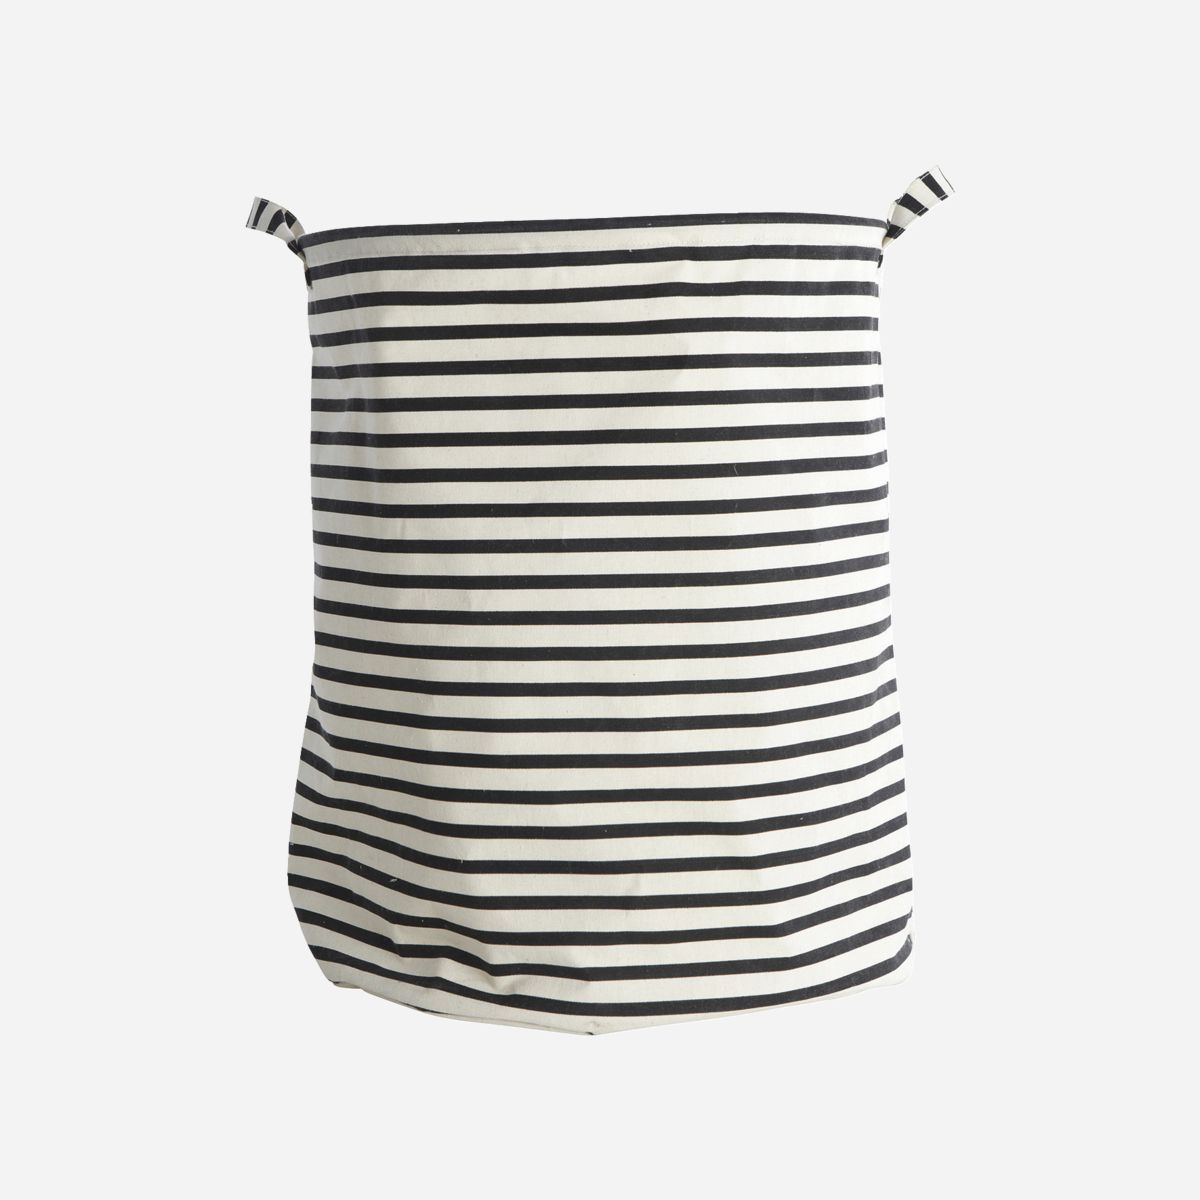 Vasketøjspose, Stripes, H 50 cm, sort